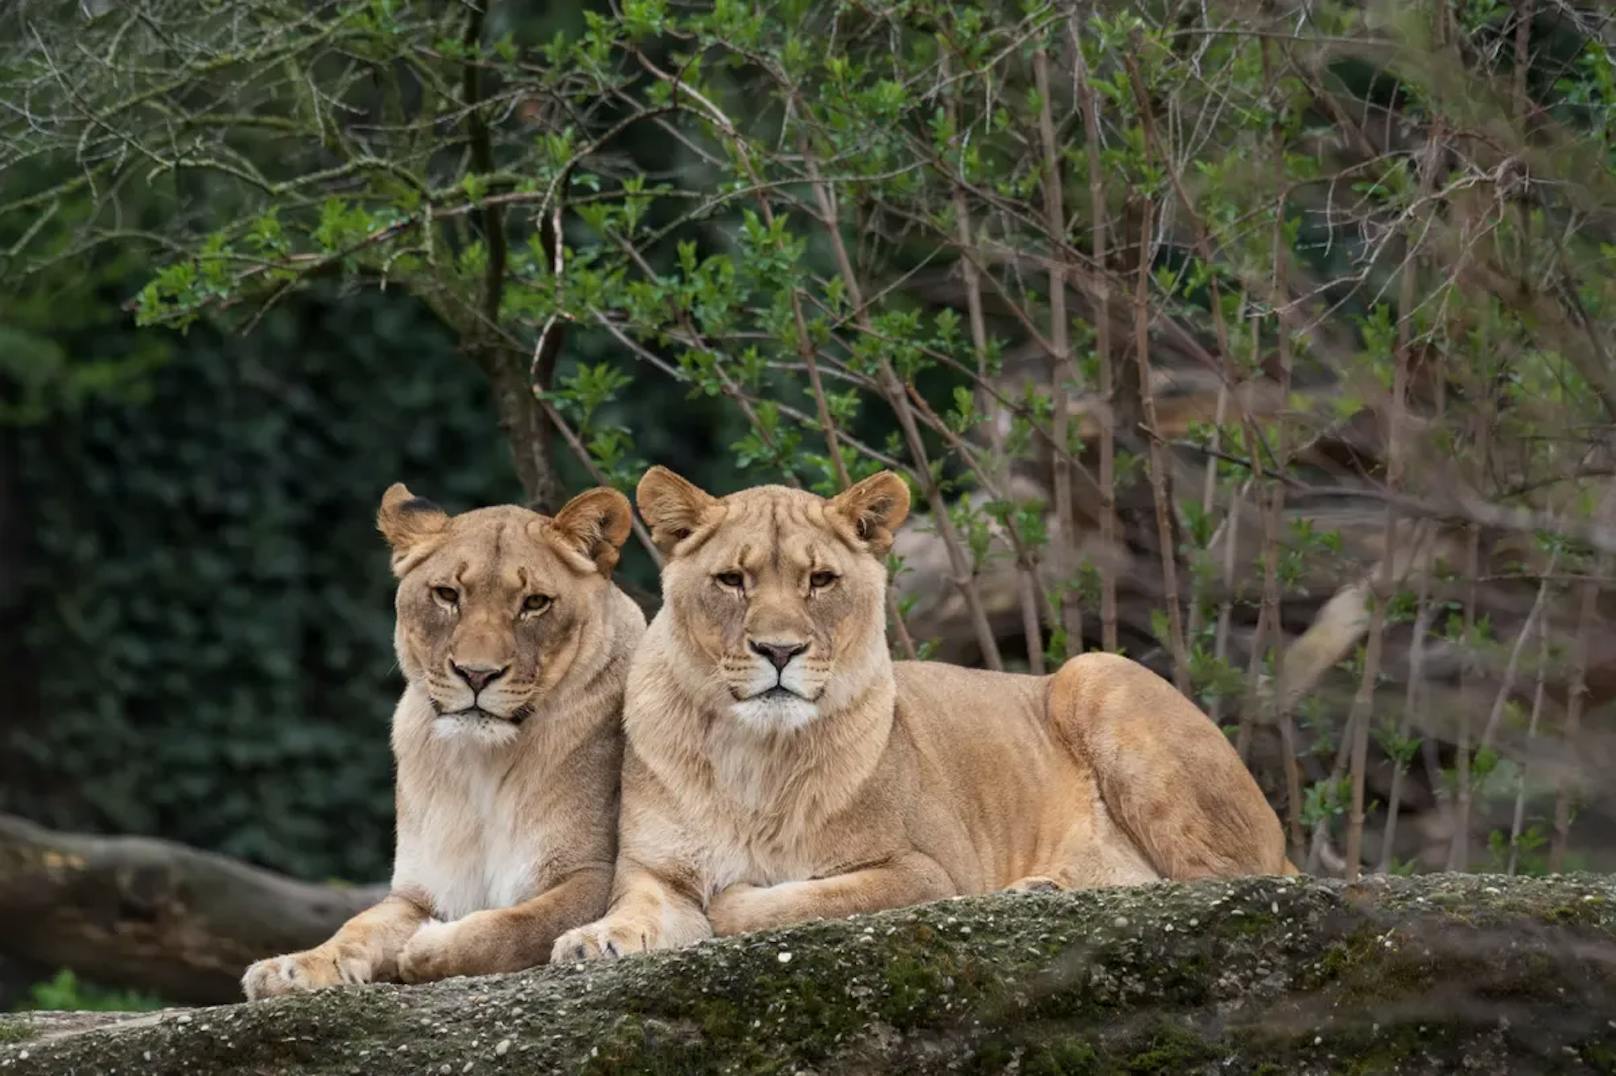 Zoo sucht Rudelführer, doch zuerst muss Löwin sterben